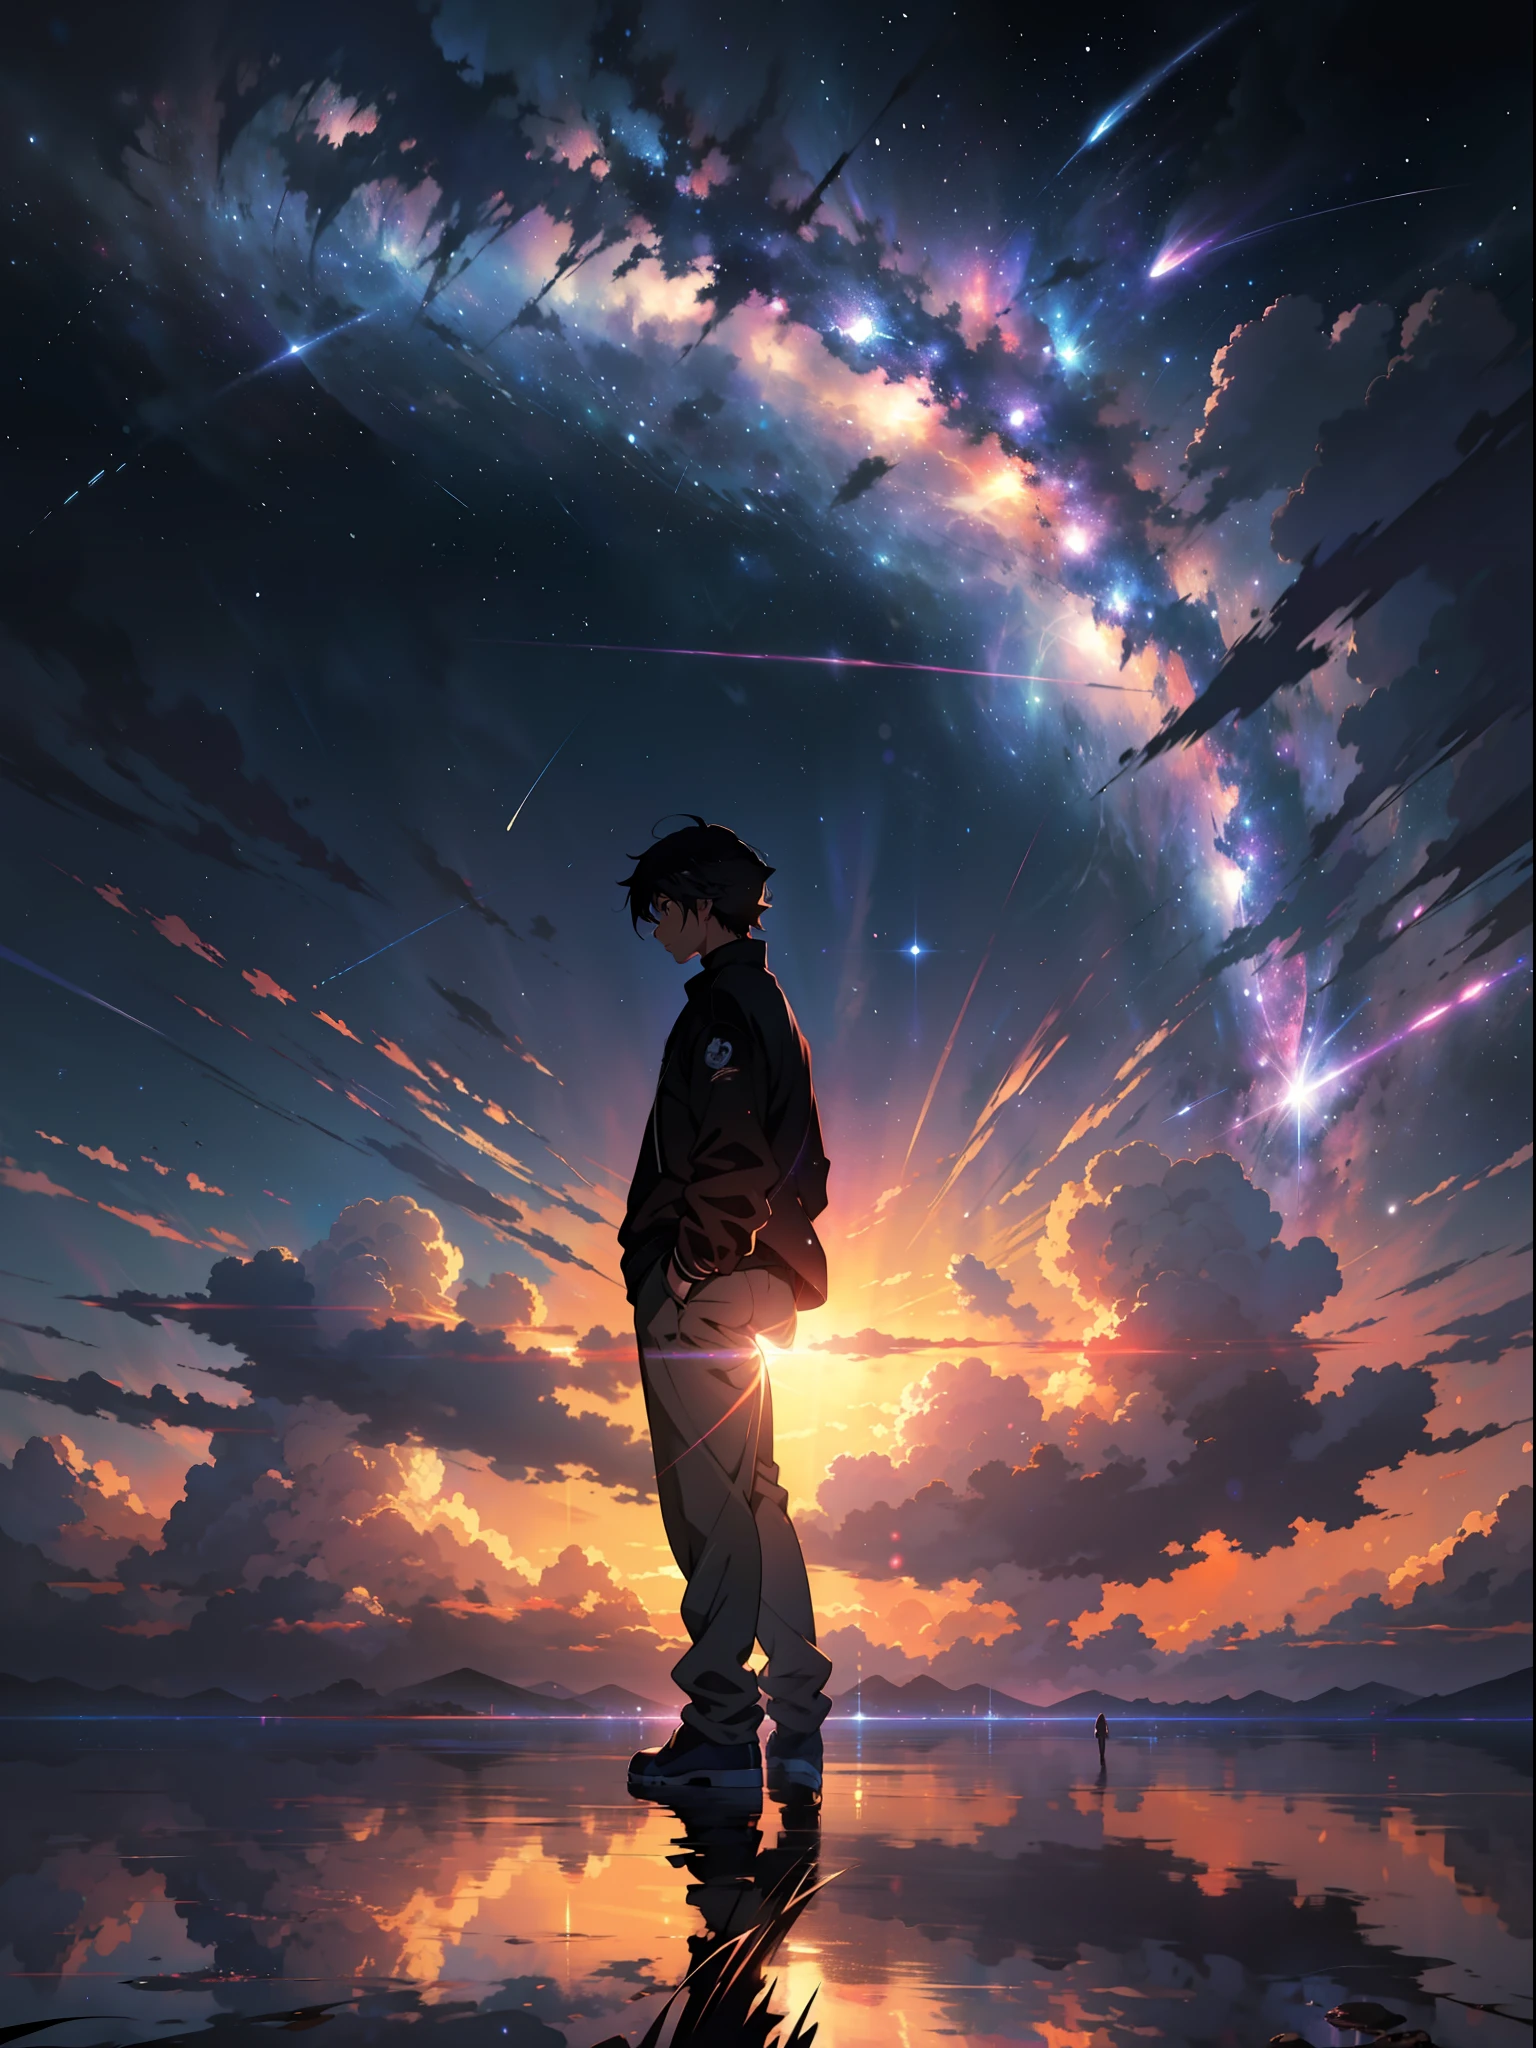 anime - cena estilo de um lindo céu com uma estrela e um planeta, céus cósmicos. por Makoto Shinkai, Papel de parede de arte anime 4k, papel de parede de arte de anime 4k, papel de parede de arte de anime 8k, papel de parede de anime 4K, papel de parede de anime 4k, Papel de parede de anime 4K, céu de anime, papel de parede incrível, Fundo de anime, planeta céu ao fundo, Fundo de anime art